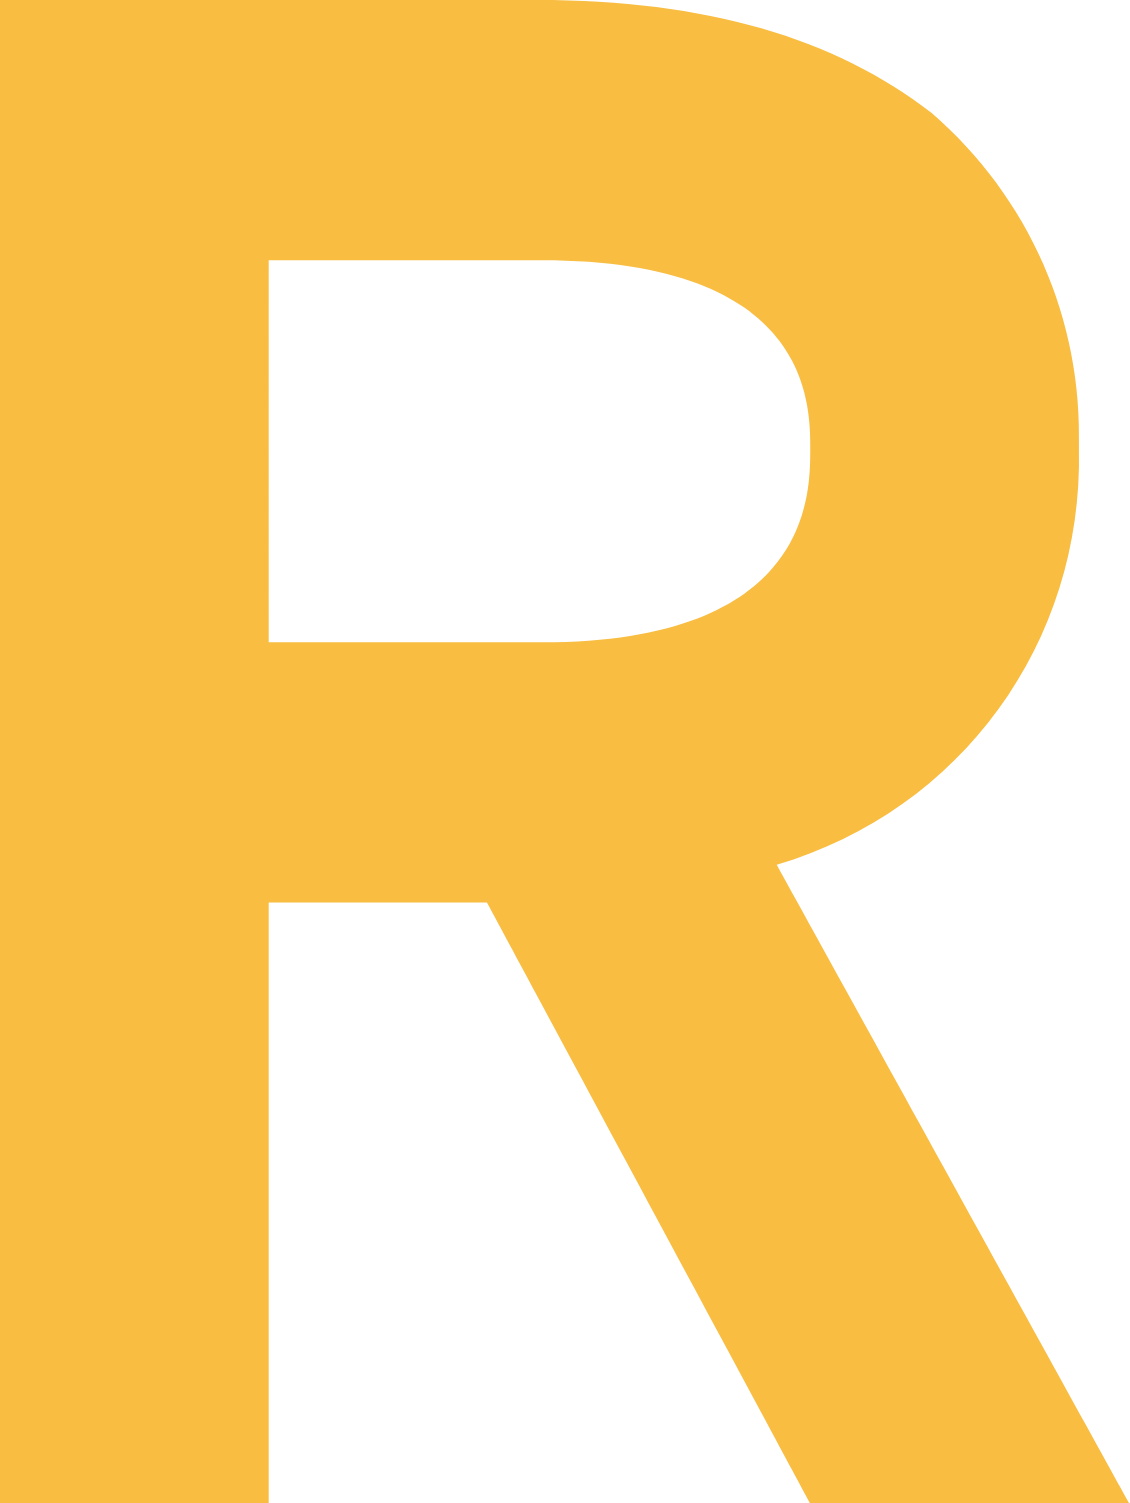 Reach plc logo (PNG transparent)